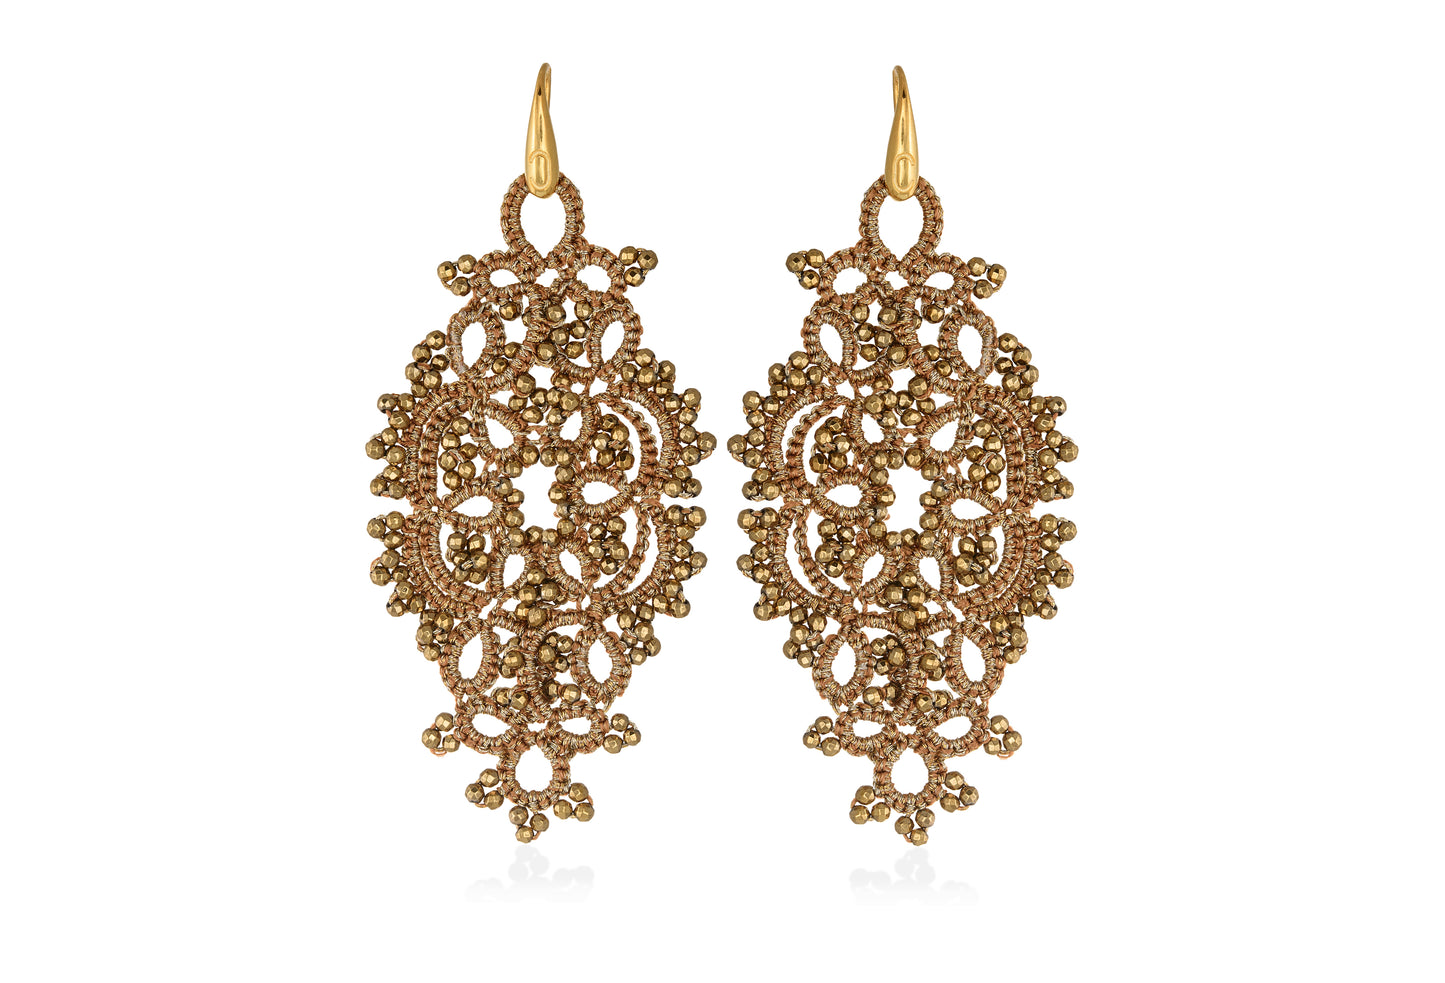 Alexandra lace earrings, gold